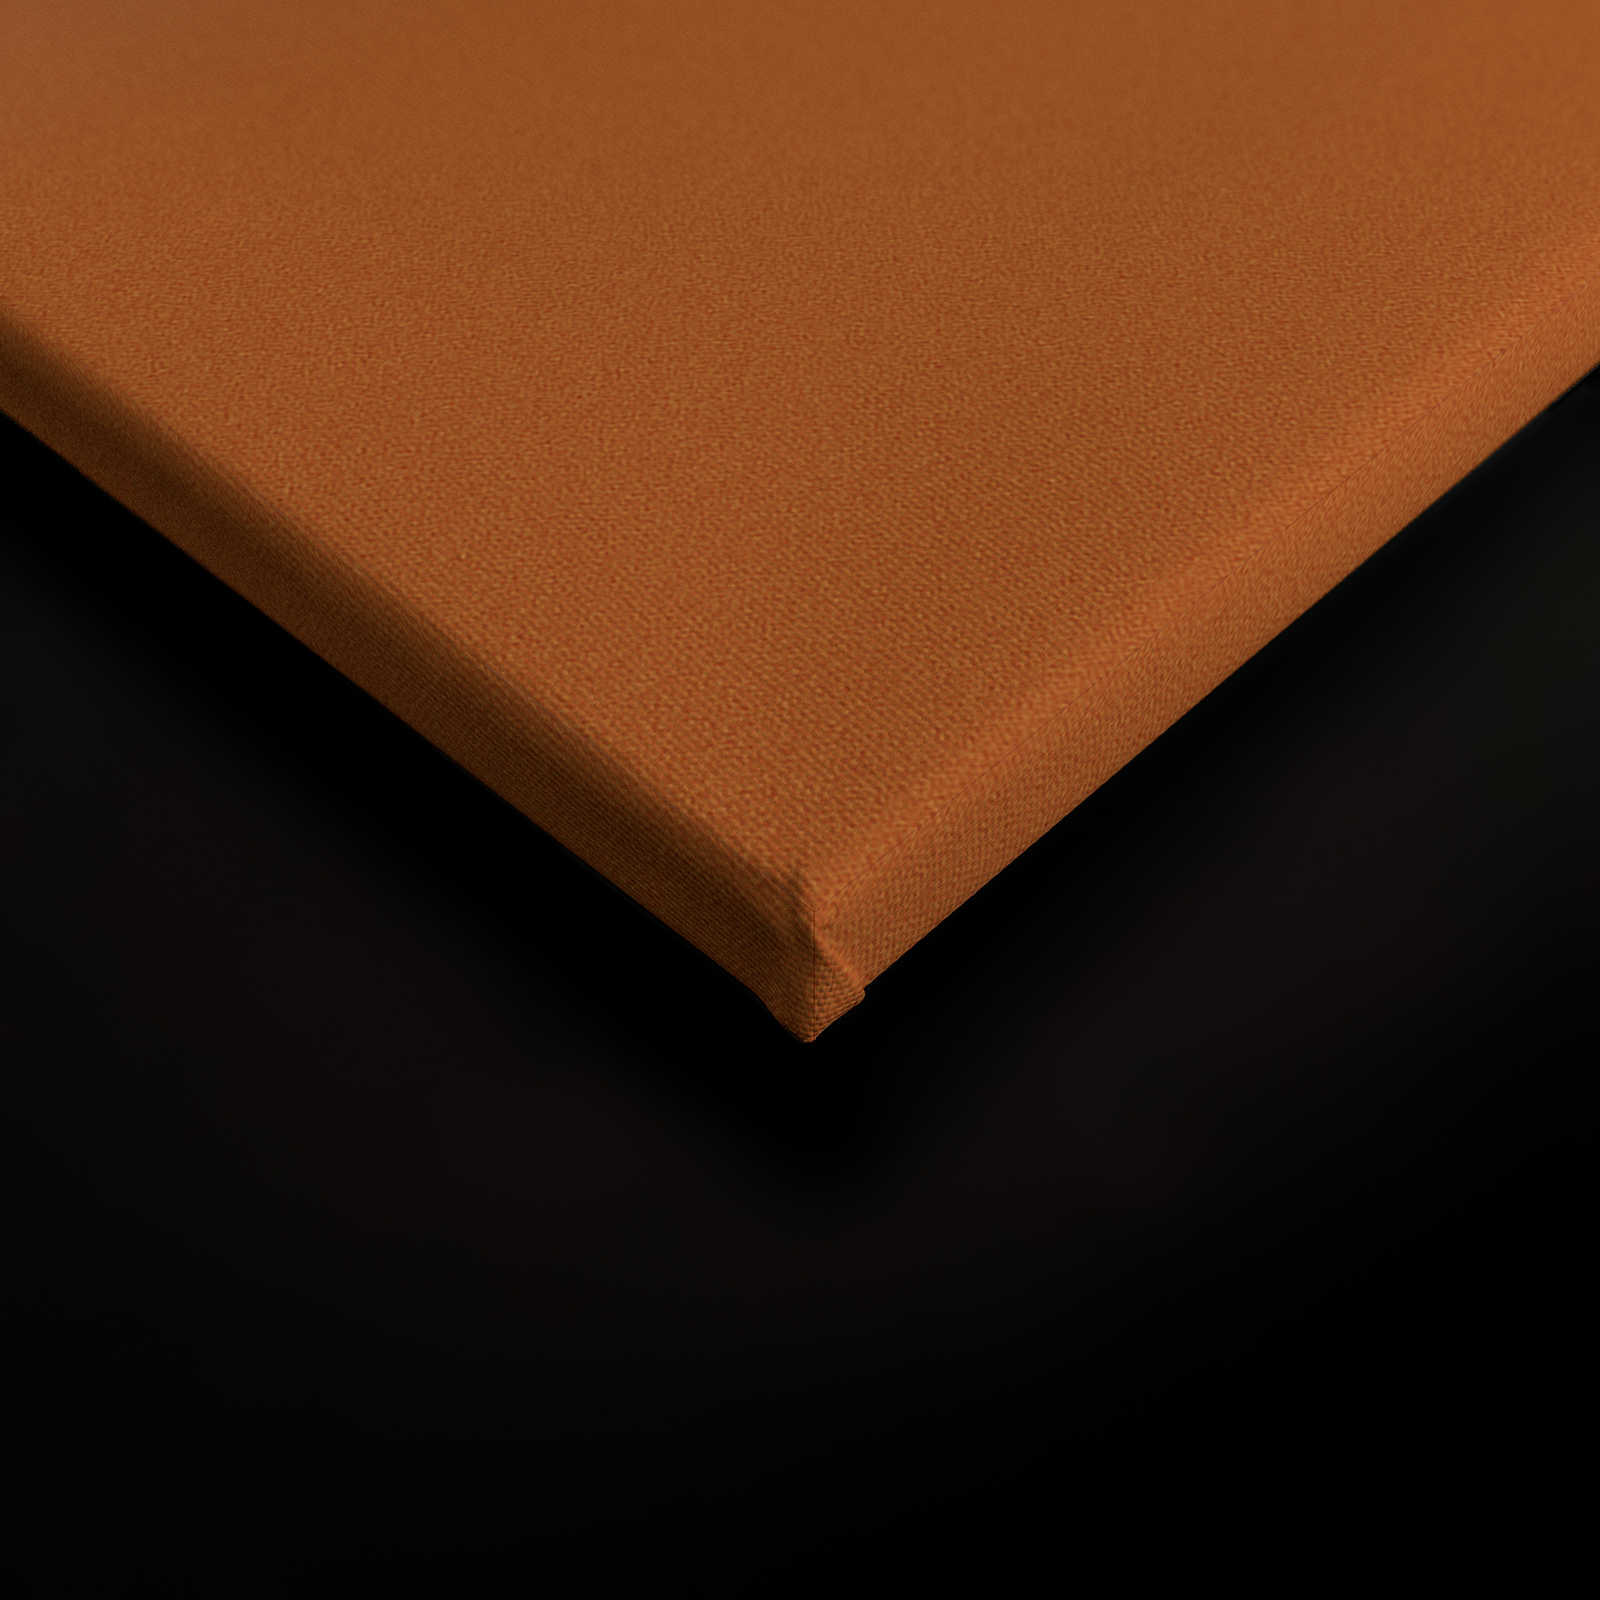             Colour Studio 4 - Toile Ombre Dégradé Rose & Orange - 1,20 m x 0,80 m
        